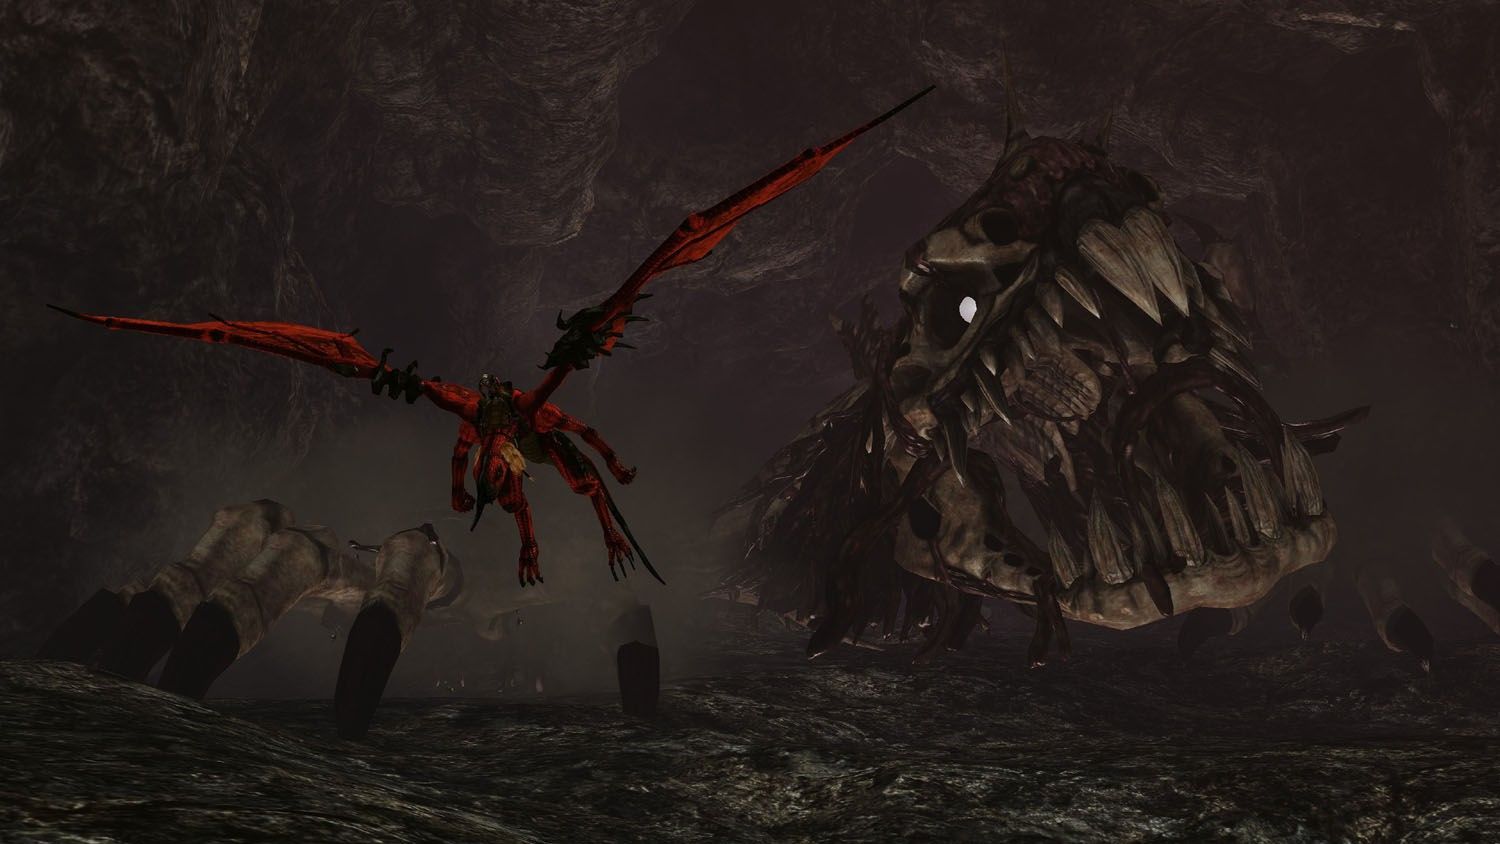 Имадже драгон. Скриншоты из игр с драконами. Crimson Dragon. Xbox 360 игра финальный босс дракон. Crimson Draconide.